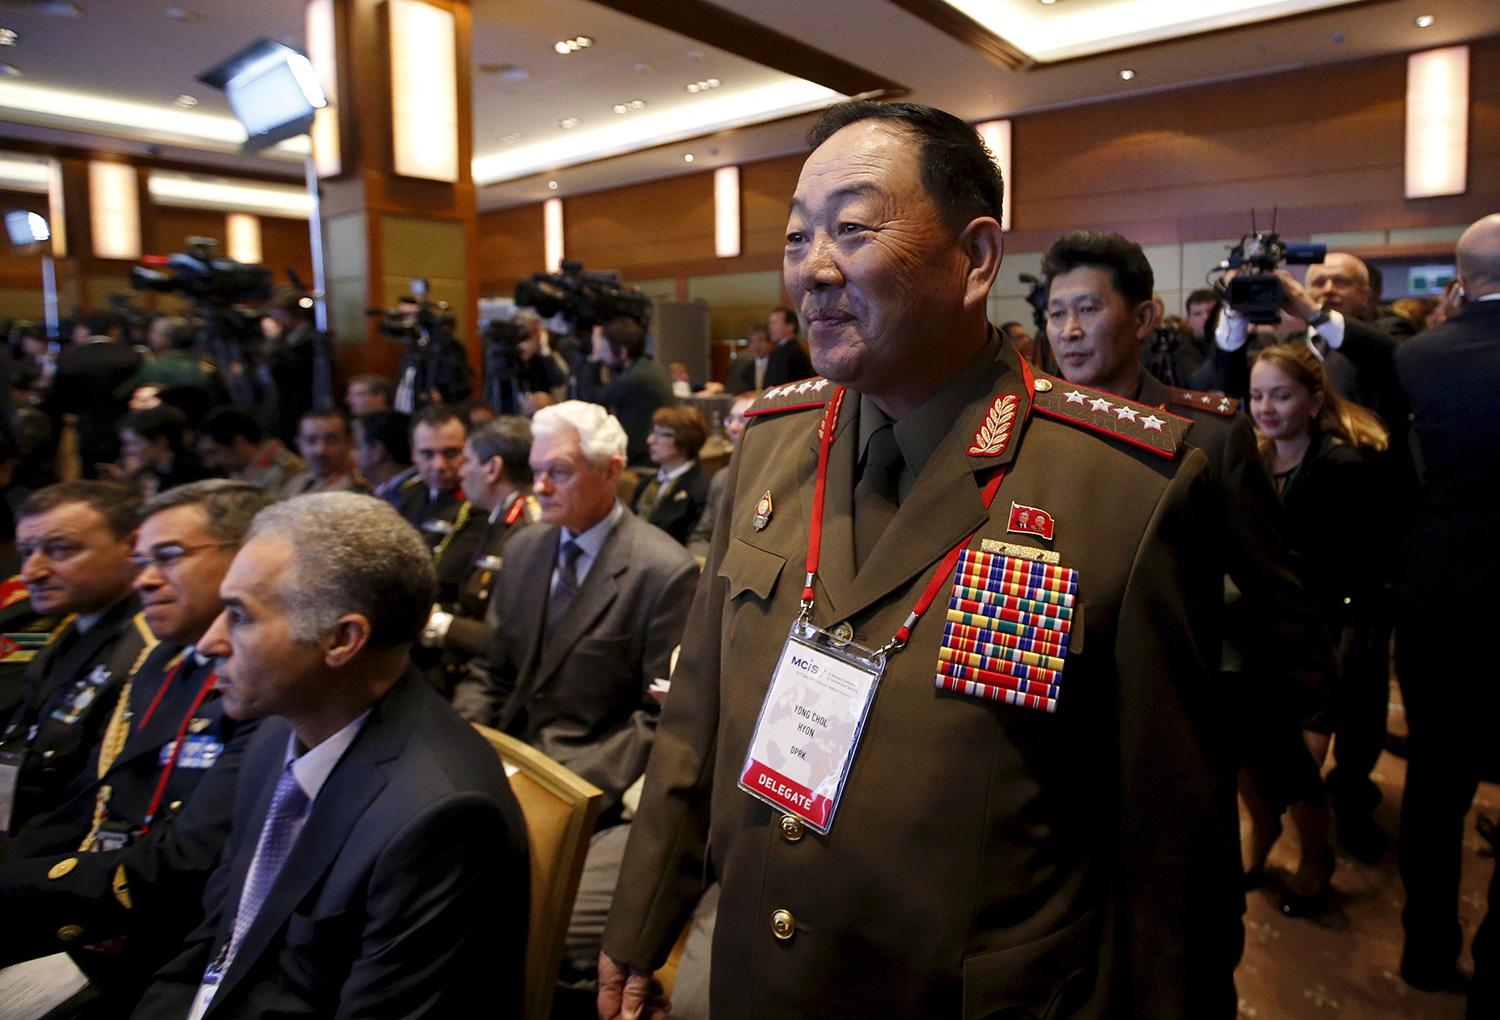 Försvarschefen deltog i en säkerhetskonferens i Moskva så sent som i april, men ska efter det ha råkat slumra till under ett militärt evenemang.